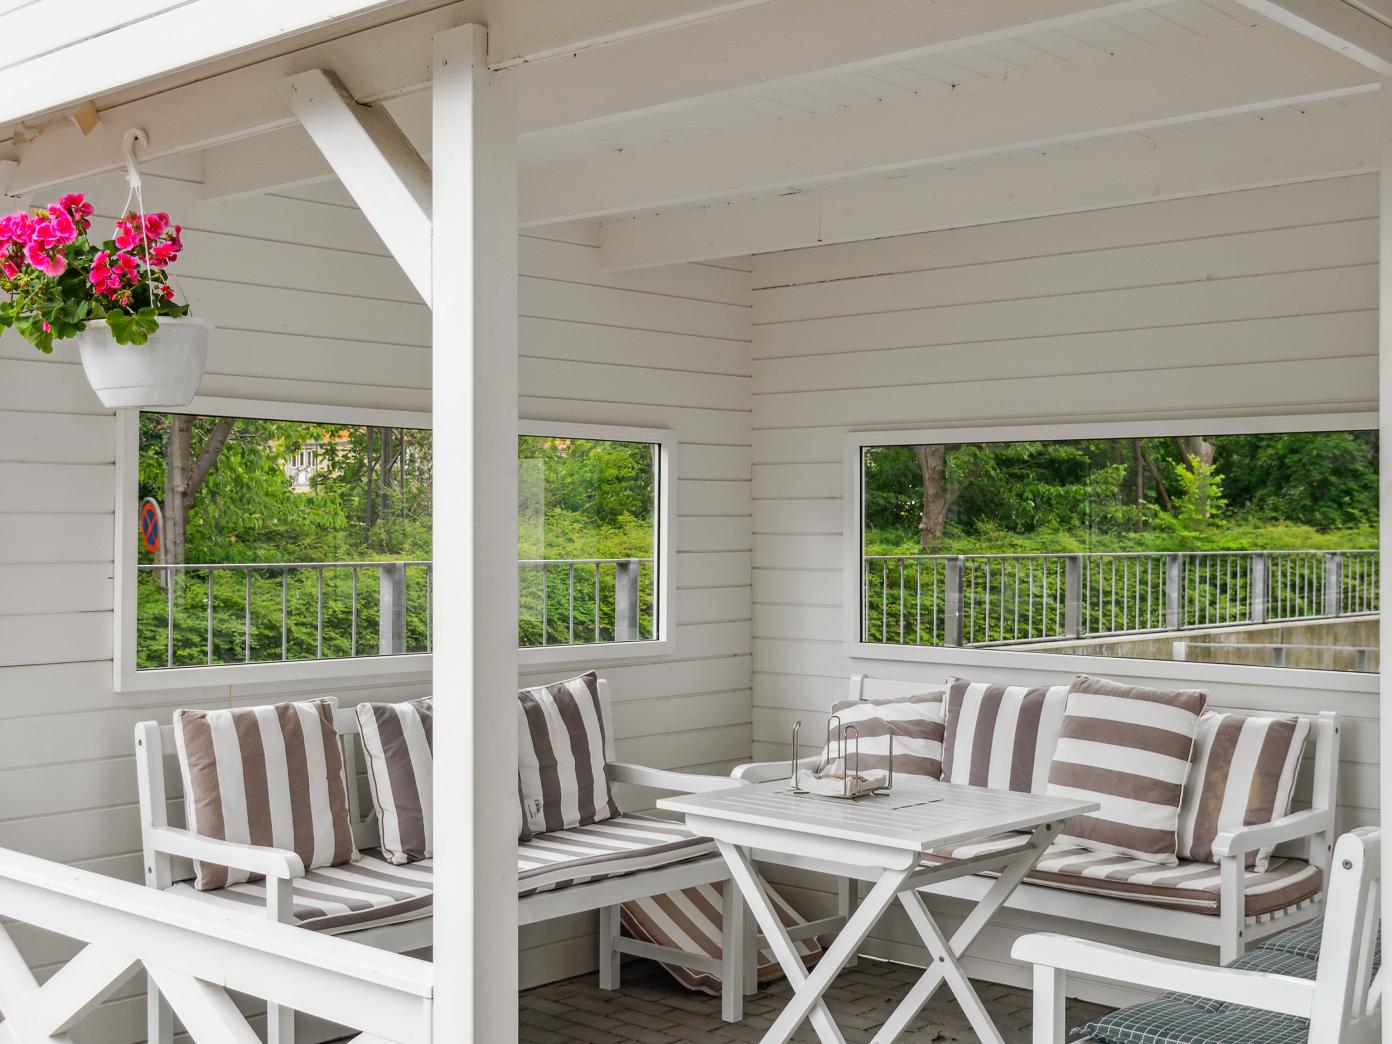 Overdækket terrasse i hvidmalet træ med bænke, borde, stole og hynder. En lyserød blomster hænger fra en bjælke.